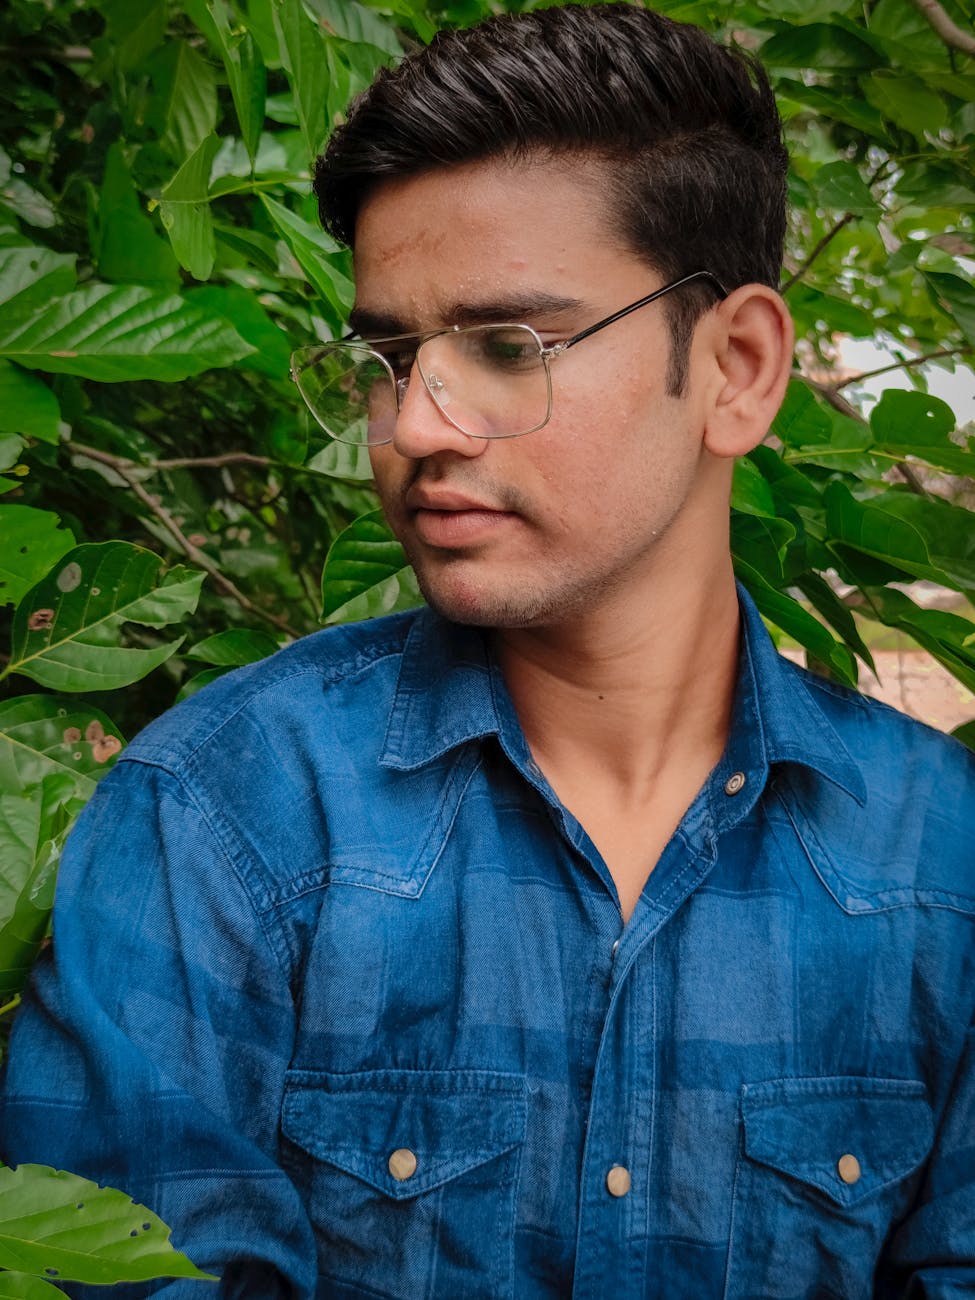 Man in Blue Denim Button Up Shirt Wearing Eyeglasses · Free Stock Photo